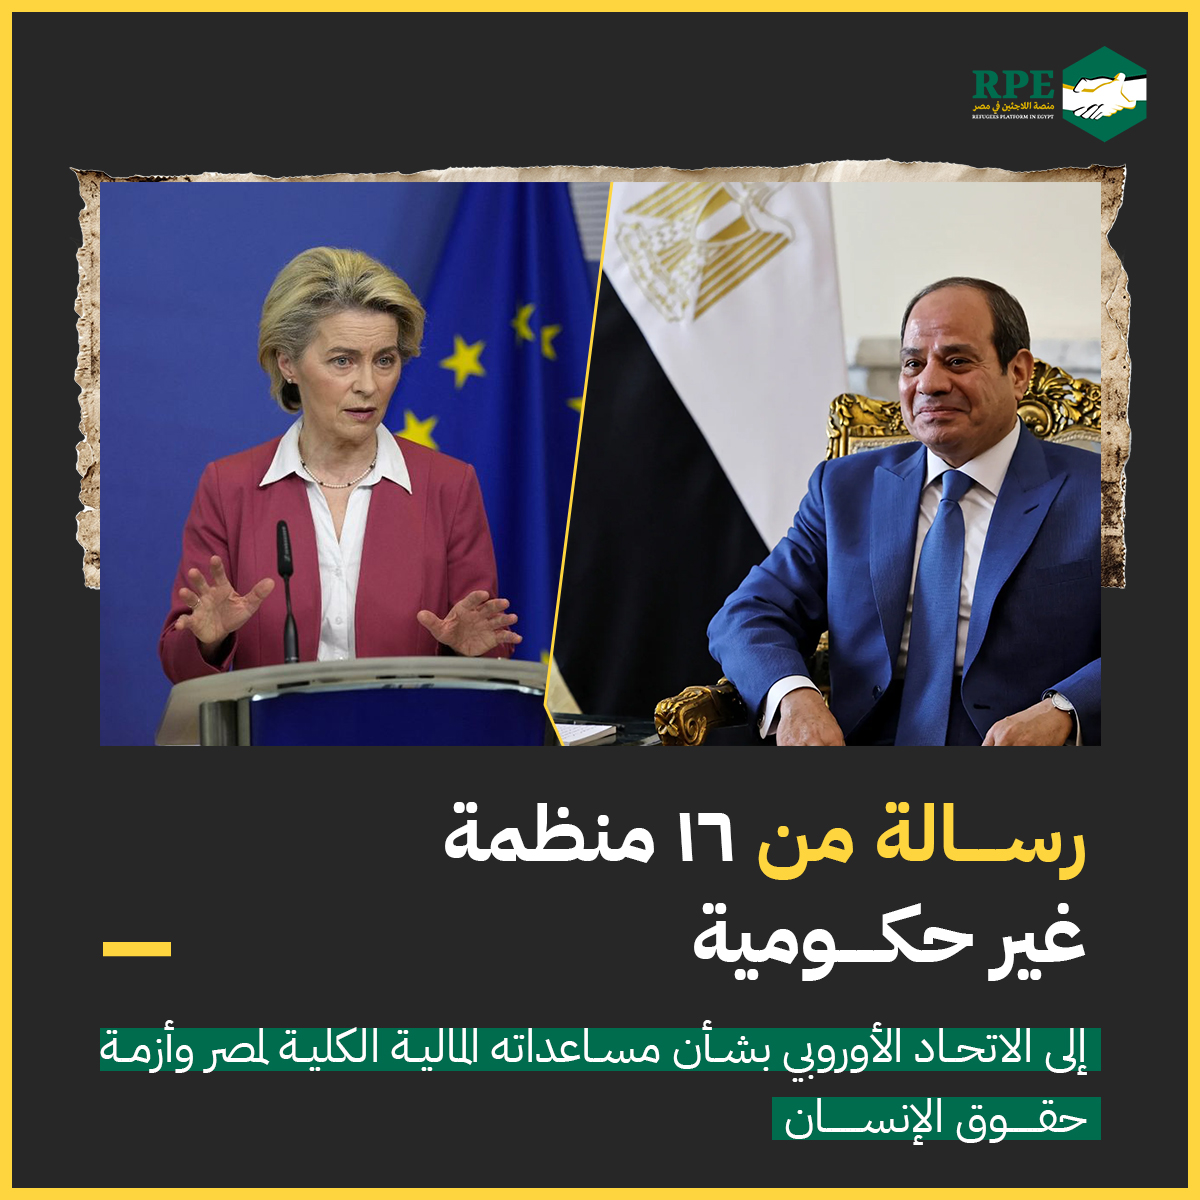 رسالة من منظمات غير حكومية إلى الاتحاد الأوروبي بشأن مساعداته المالية الكلية لمصر وأزمة حقوق الإنسان